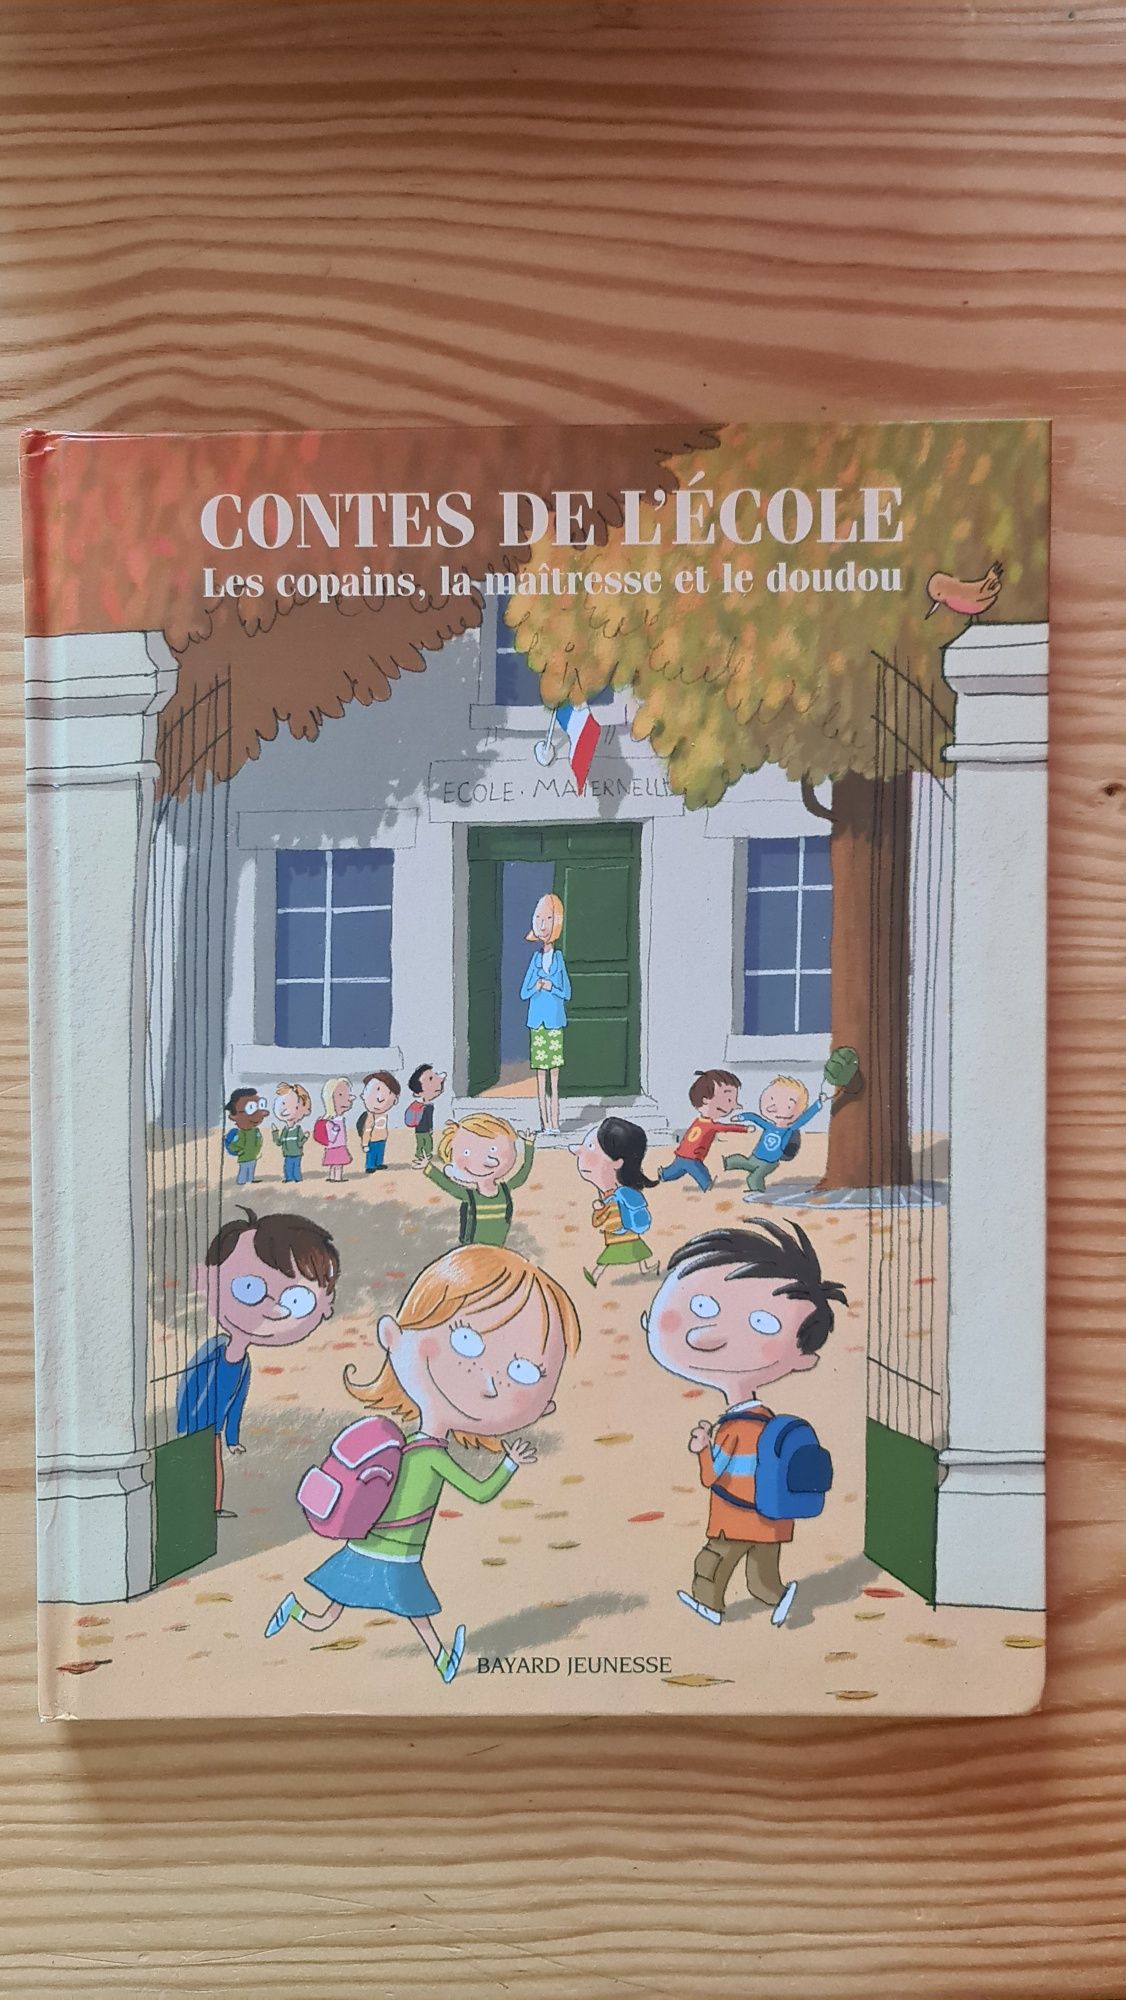 Contes de l'école książka po francusku livre en français